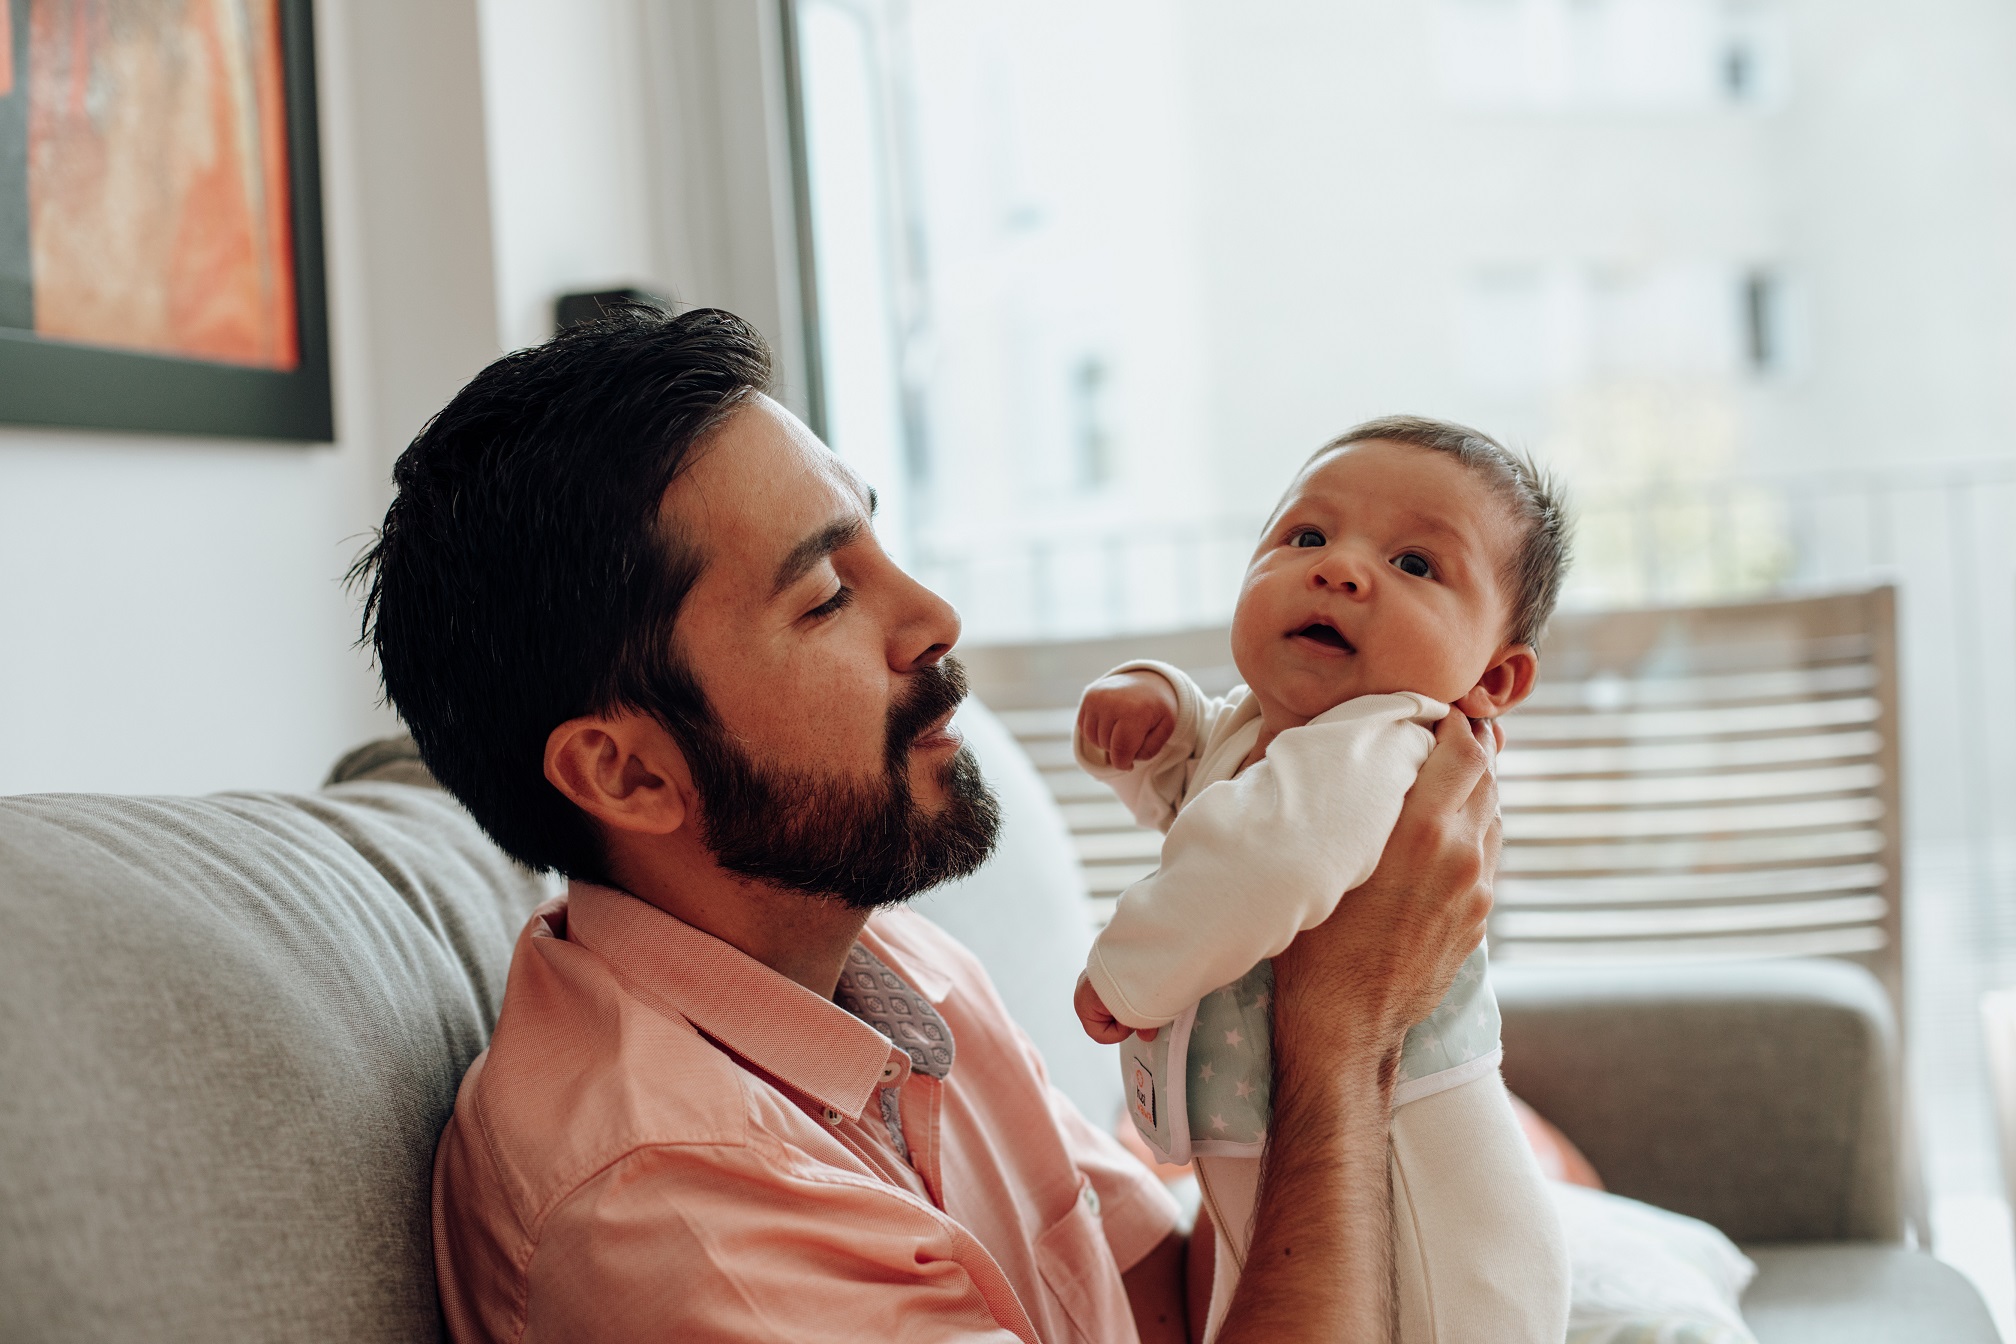 Coliques du nourrisson : traitement par la méthode Rubio - Bébés